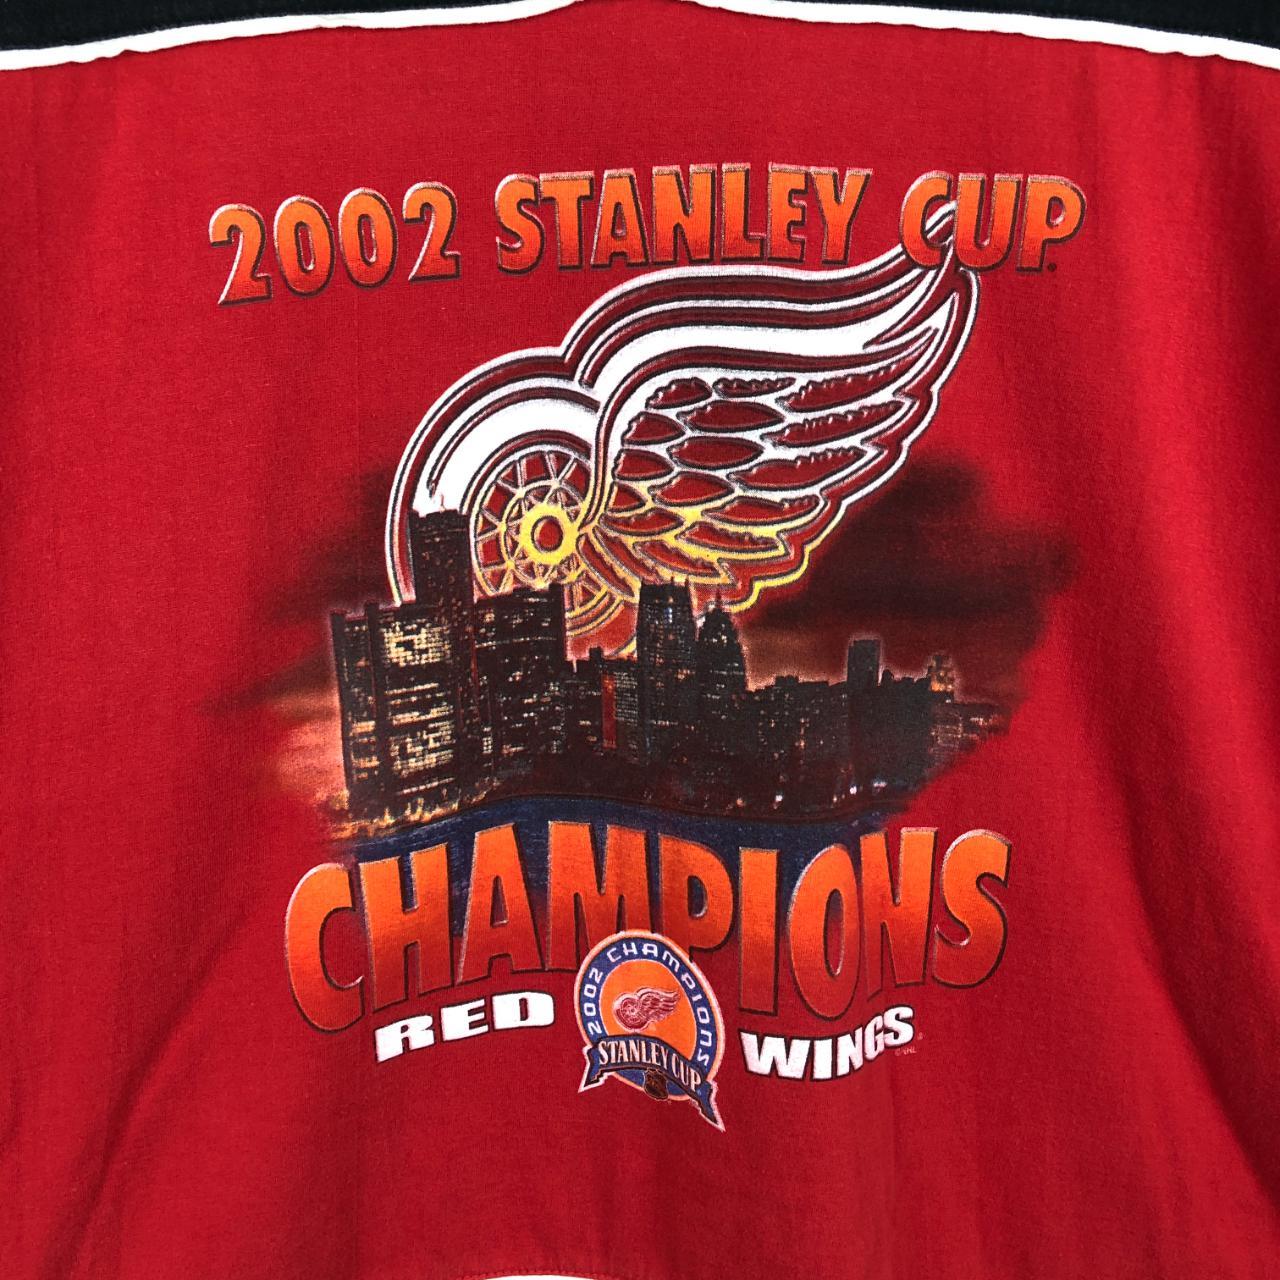 Vintage 2000s era Detroit Red Wings NHL Hockey New - Depop